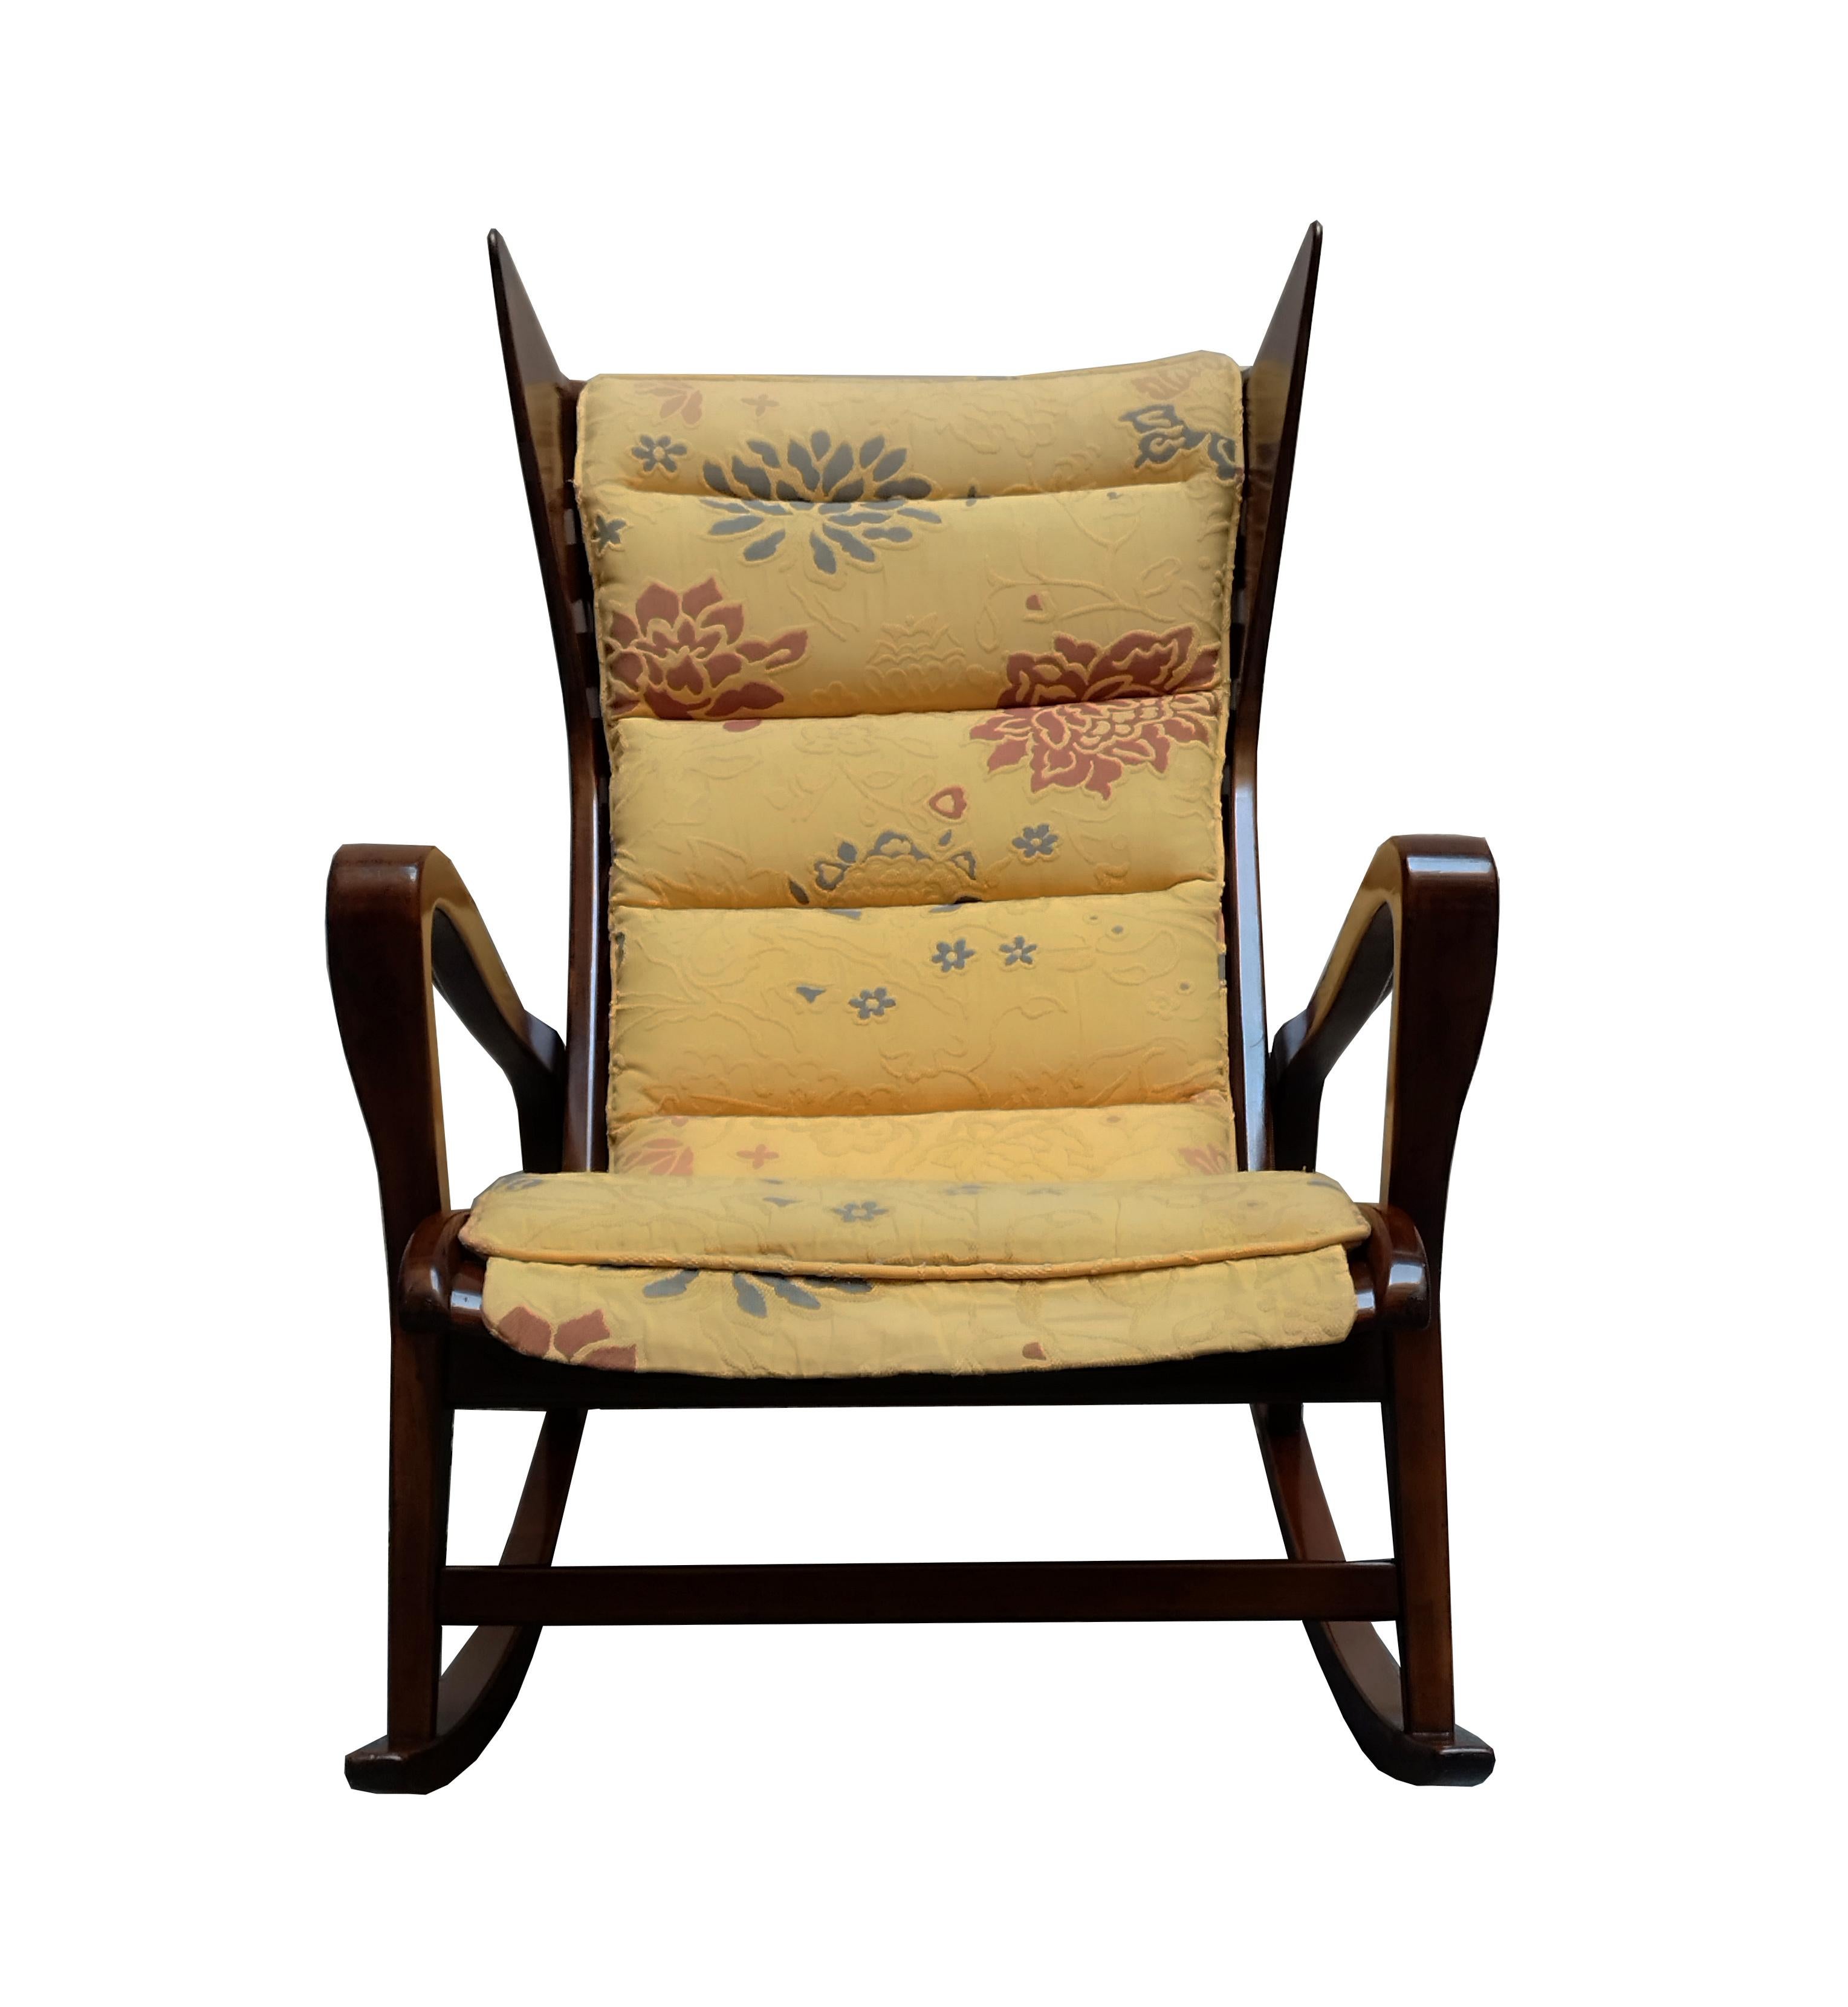 Très rare fauteuil à bascule en noyer, caoutchouc et tissu pour Cassina, Italie. Les techniques de production exquises utilisées sont attestées par les magnifiques détails en bois qui caractérisent l'ensemble du design. Rembourrage original en tissu